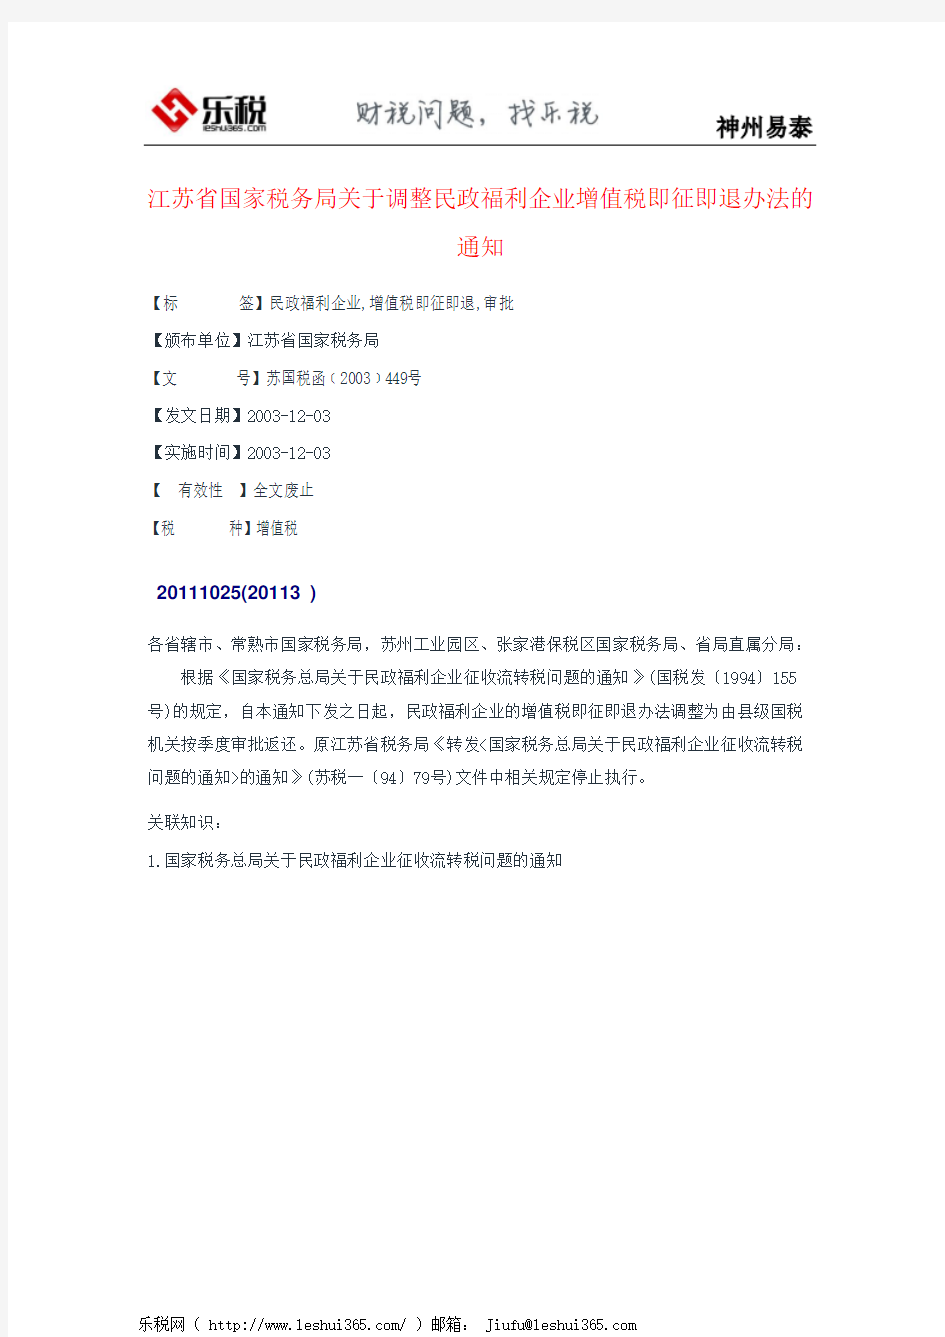 江苏省国家税务局关于调整民政福利企业增值税即征即退办法的通知